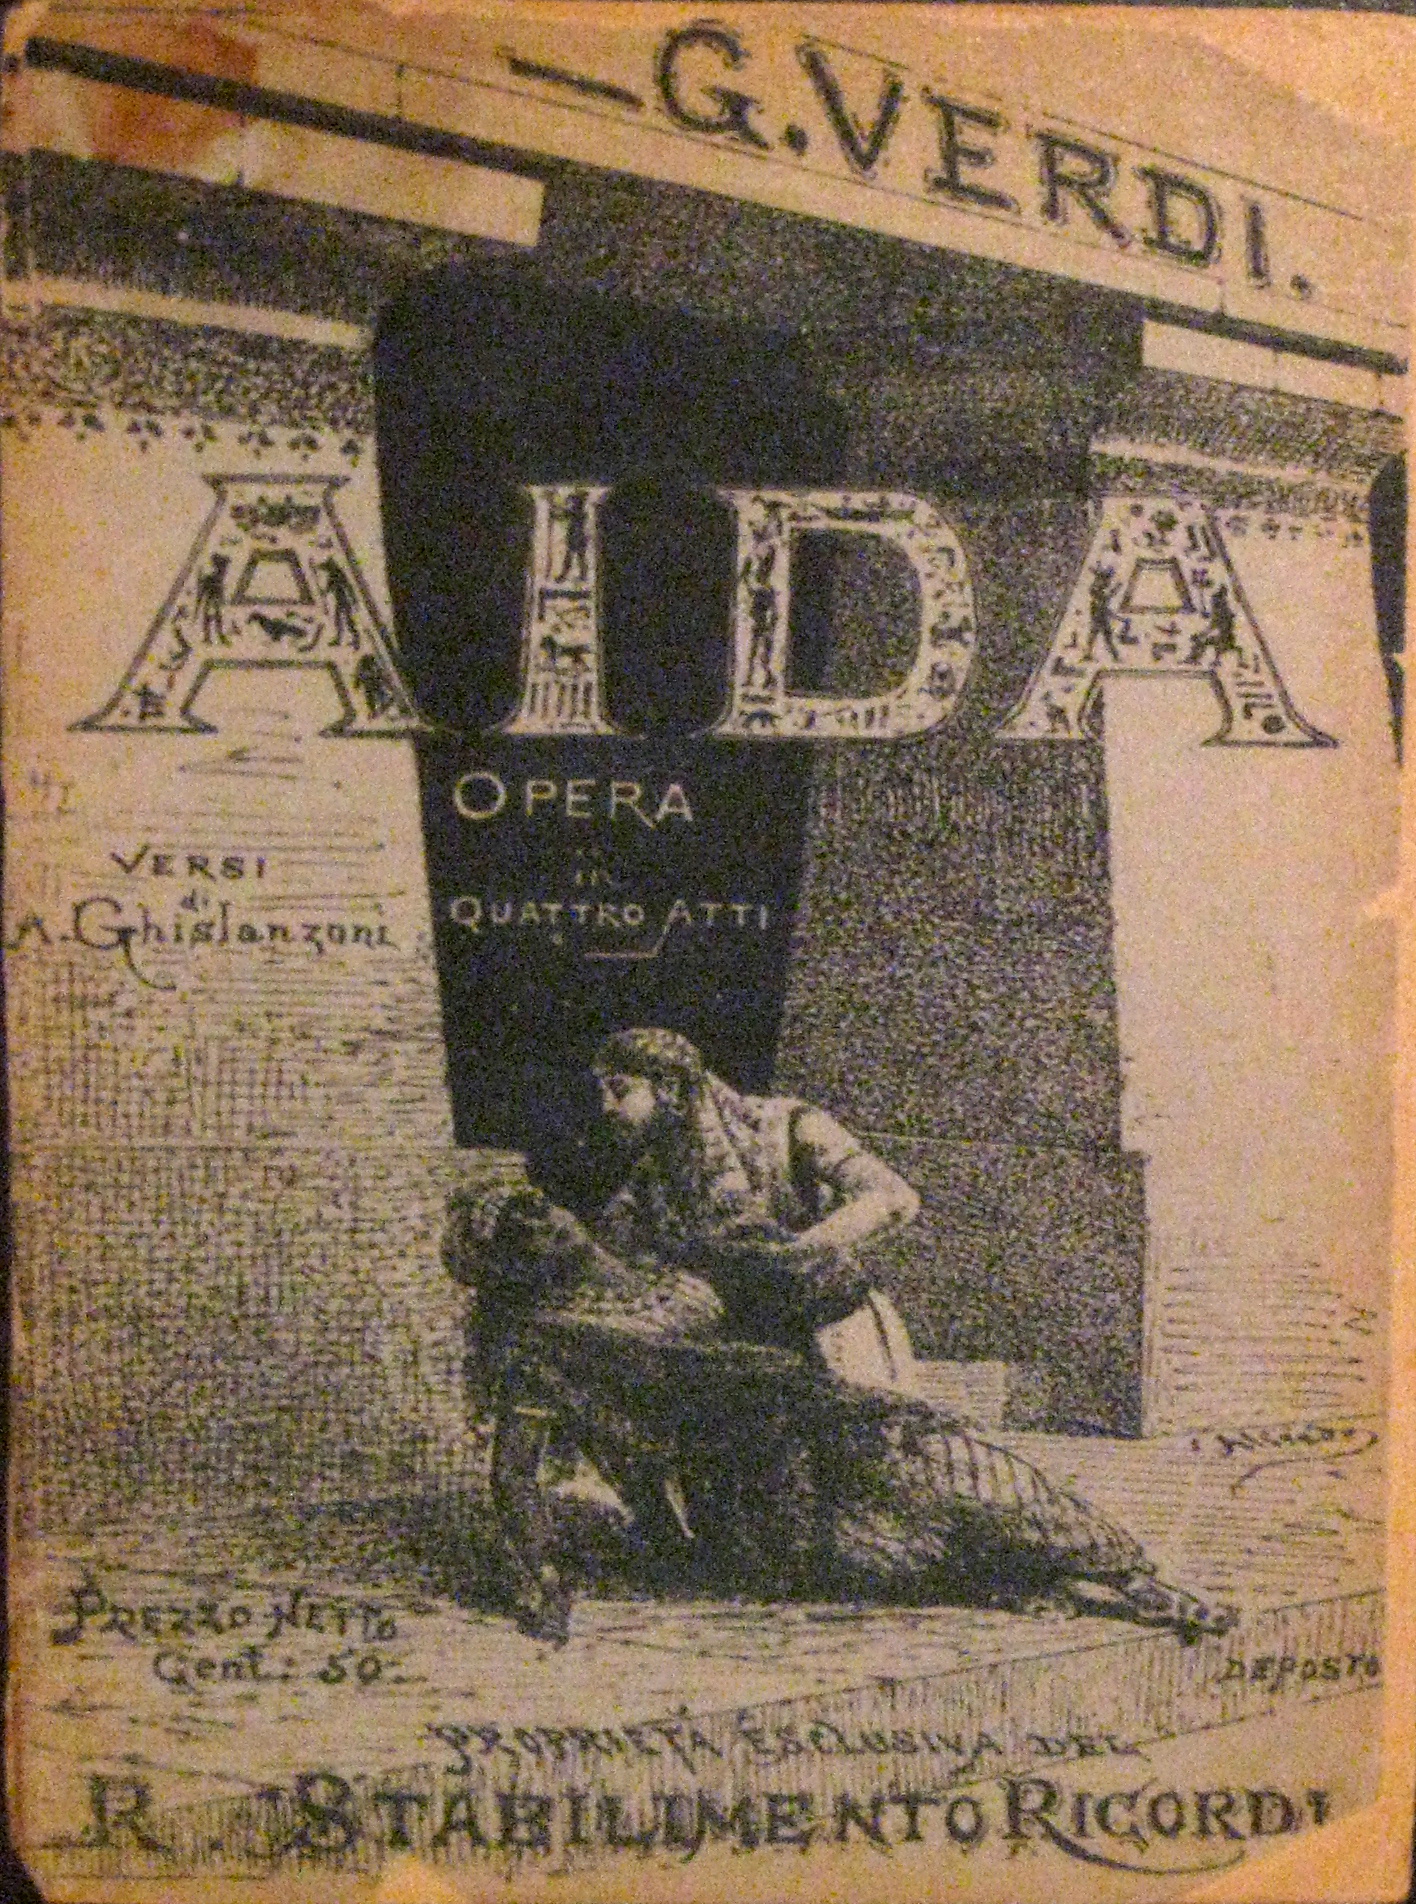 Open in Modal Box http://museodelrisorgimento.lucca.it/wp-content/uploads/2014/11/Libretto-dellAida-del-1890.jpg